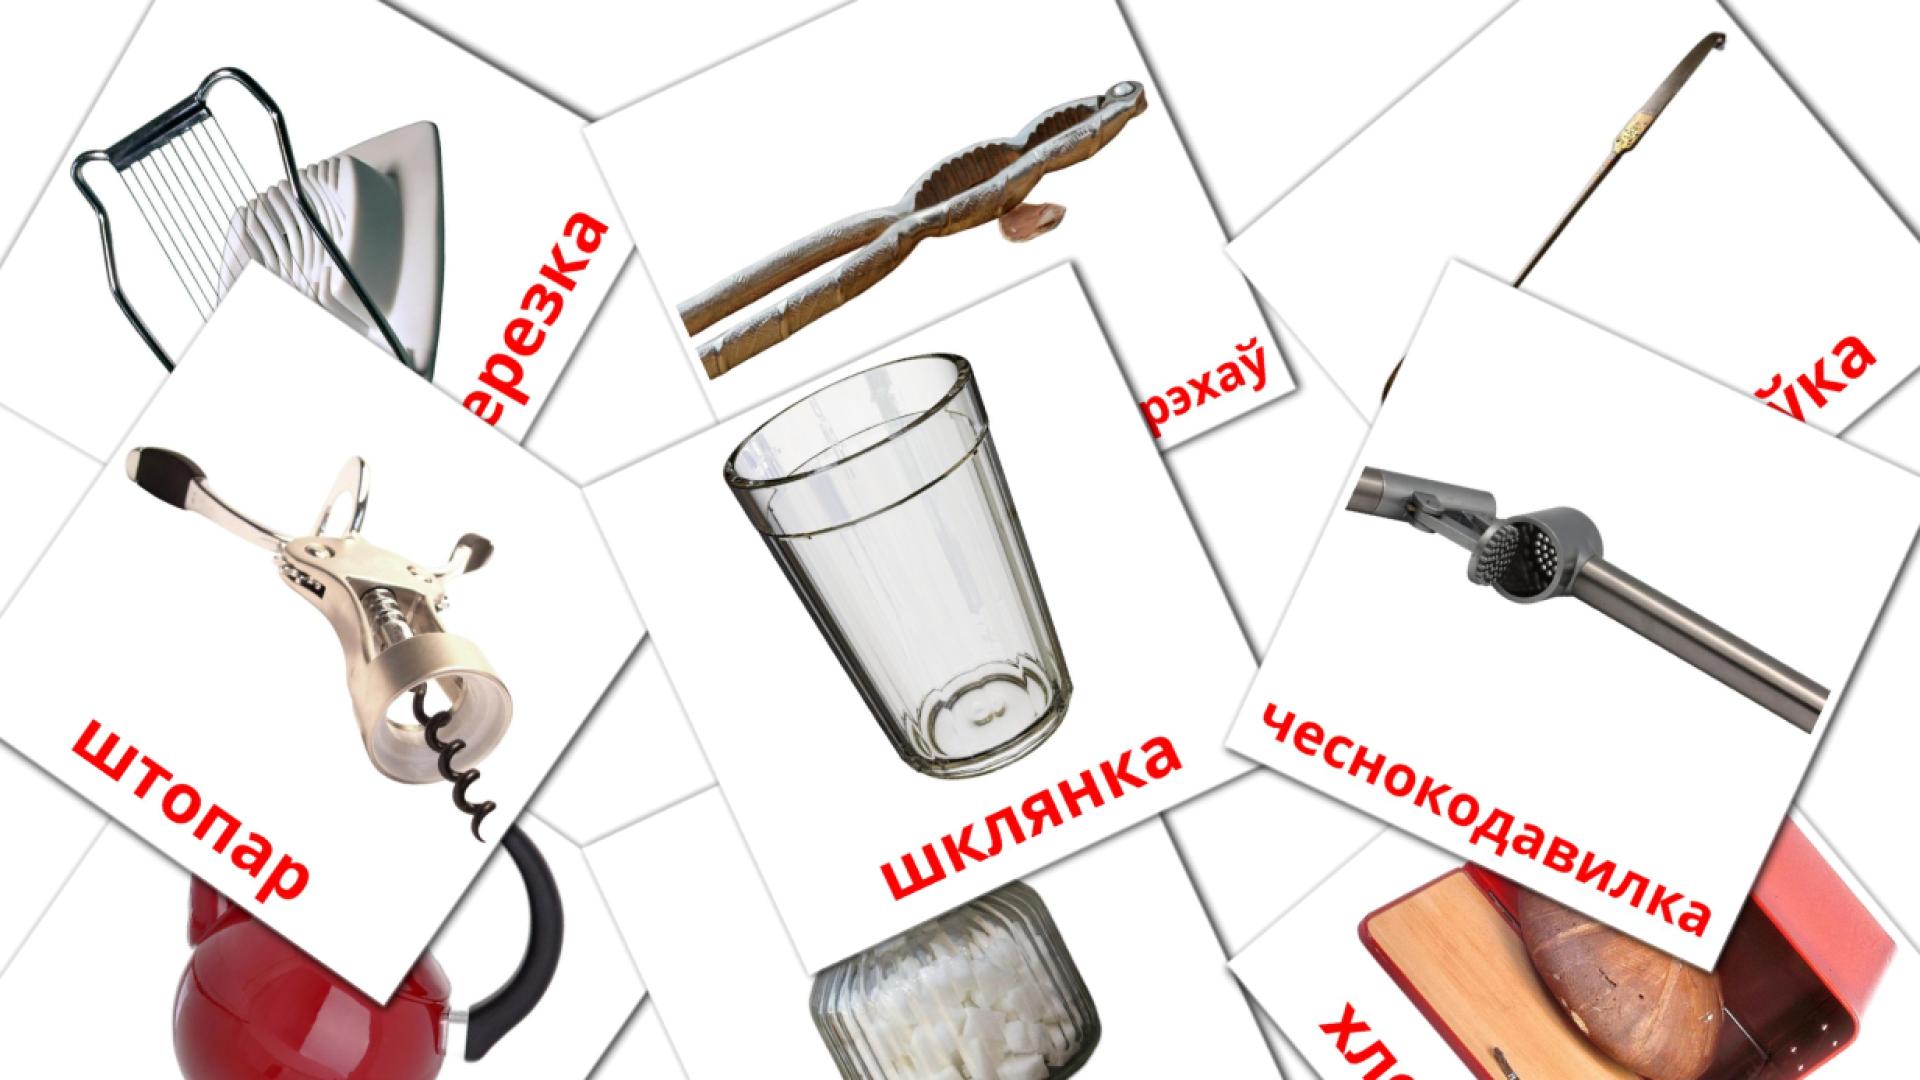 Fiches de vocabulaire biélorussees sur Кухня